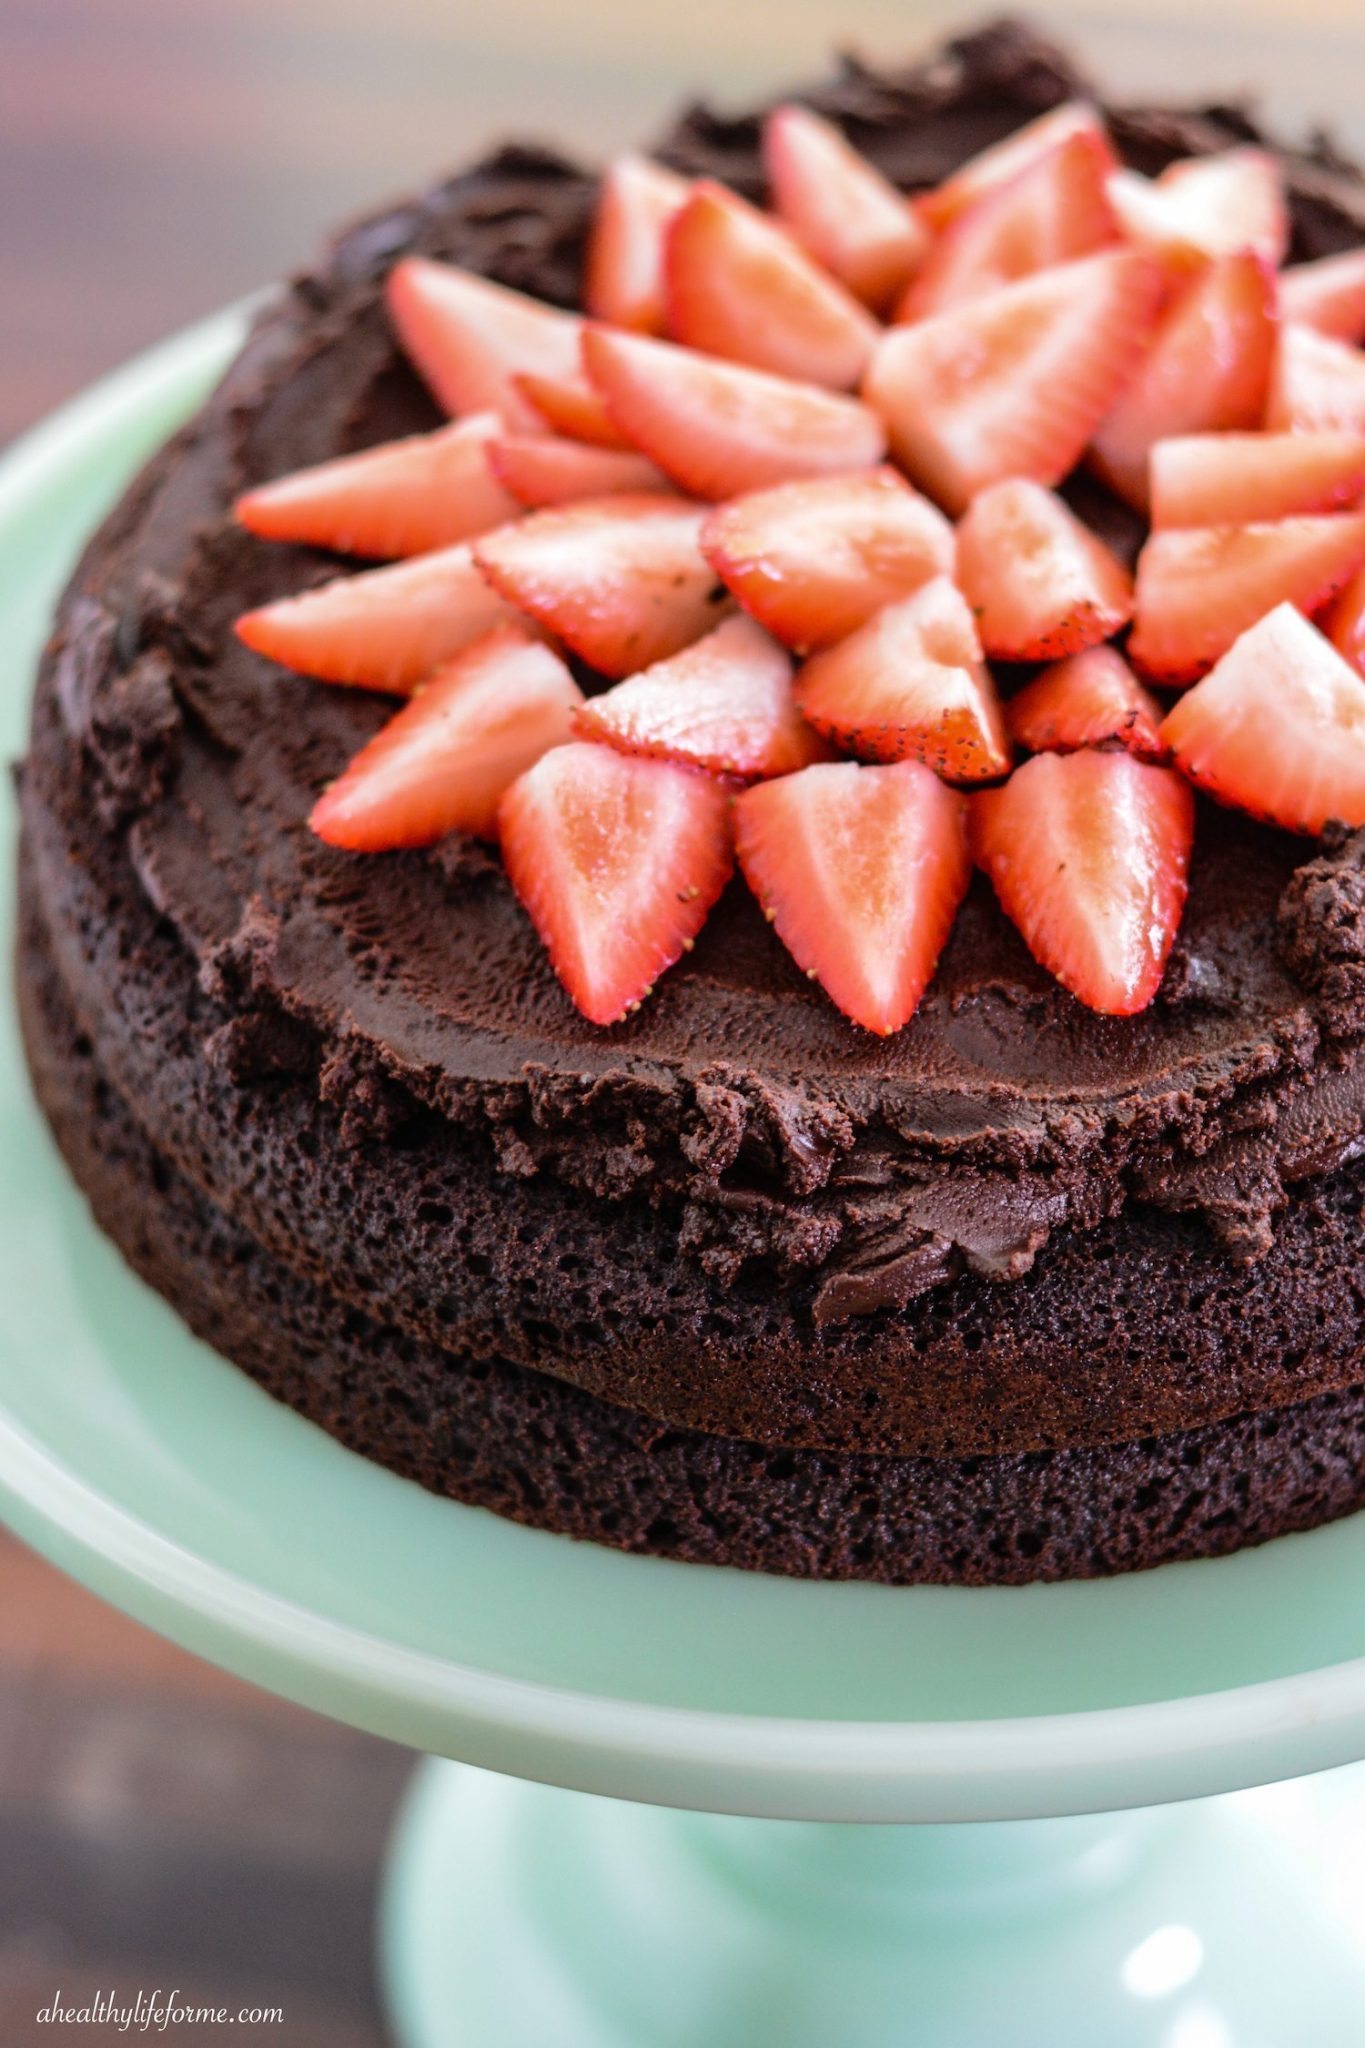 Strawberry Chocolate Paleo Cake Recipe | ahealthylifeforme.com